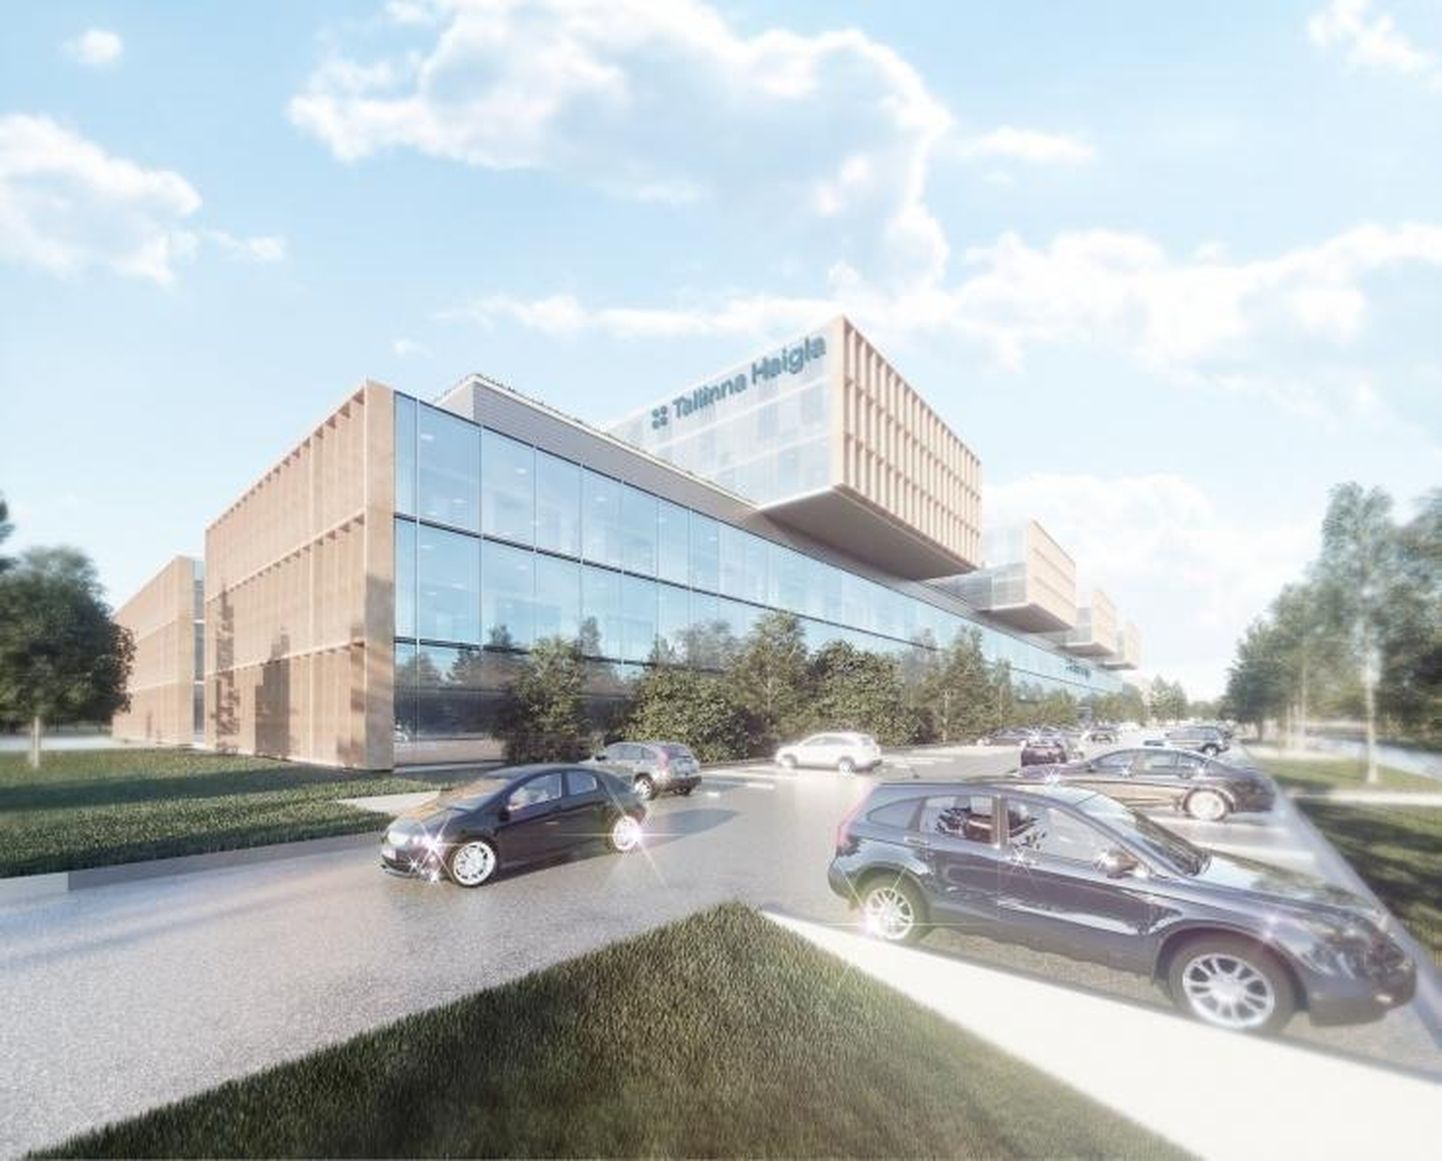 Будущая Таллиннская больница - одна из крупнейших инвестиций ближайших лет